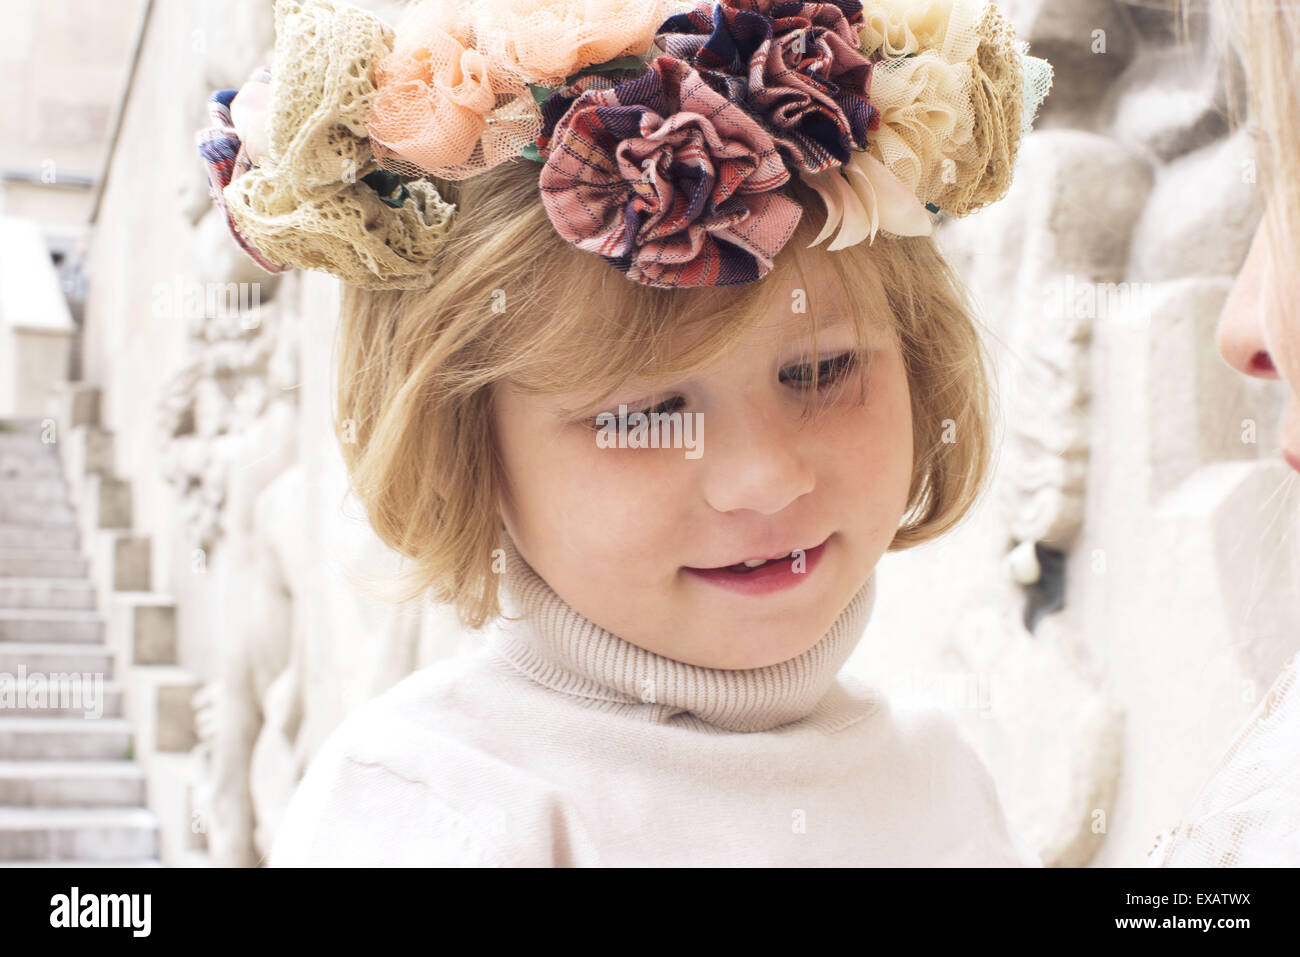 Little girl wearing flower wreath, portrait Stock Photo